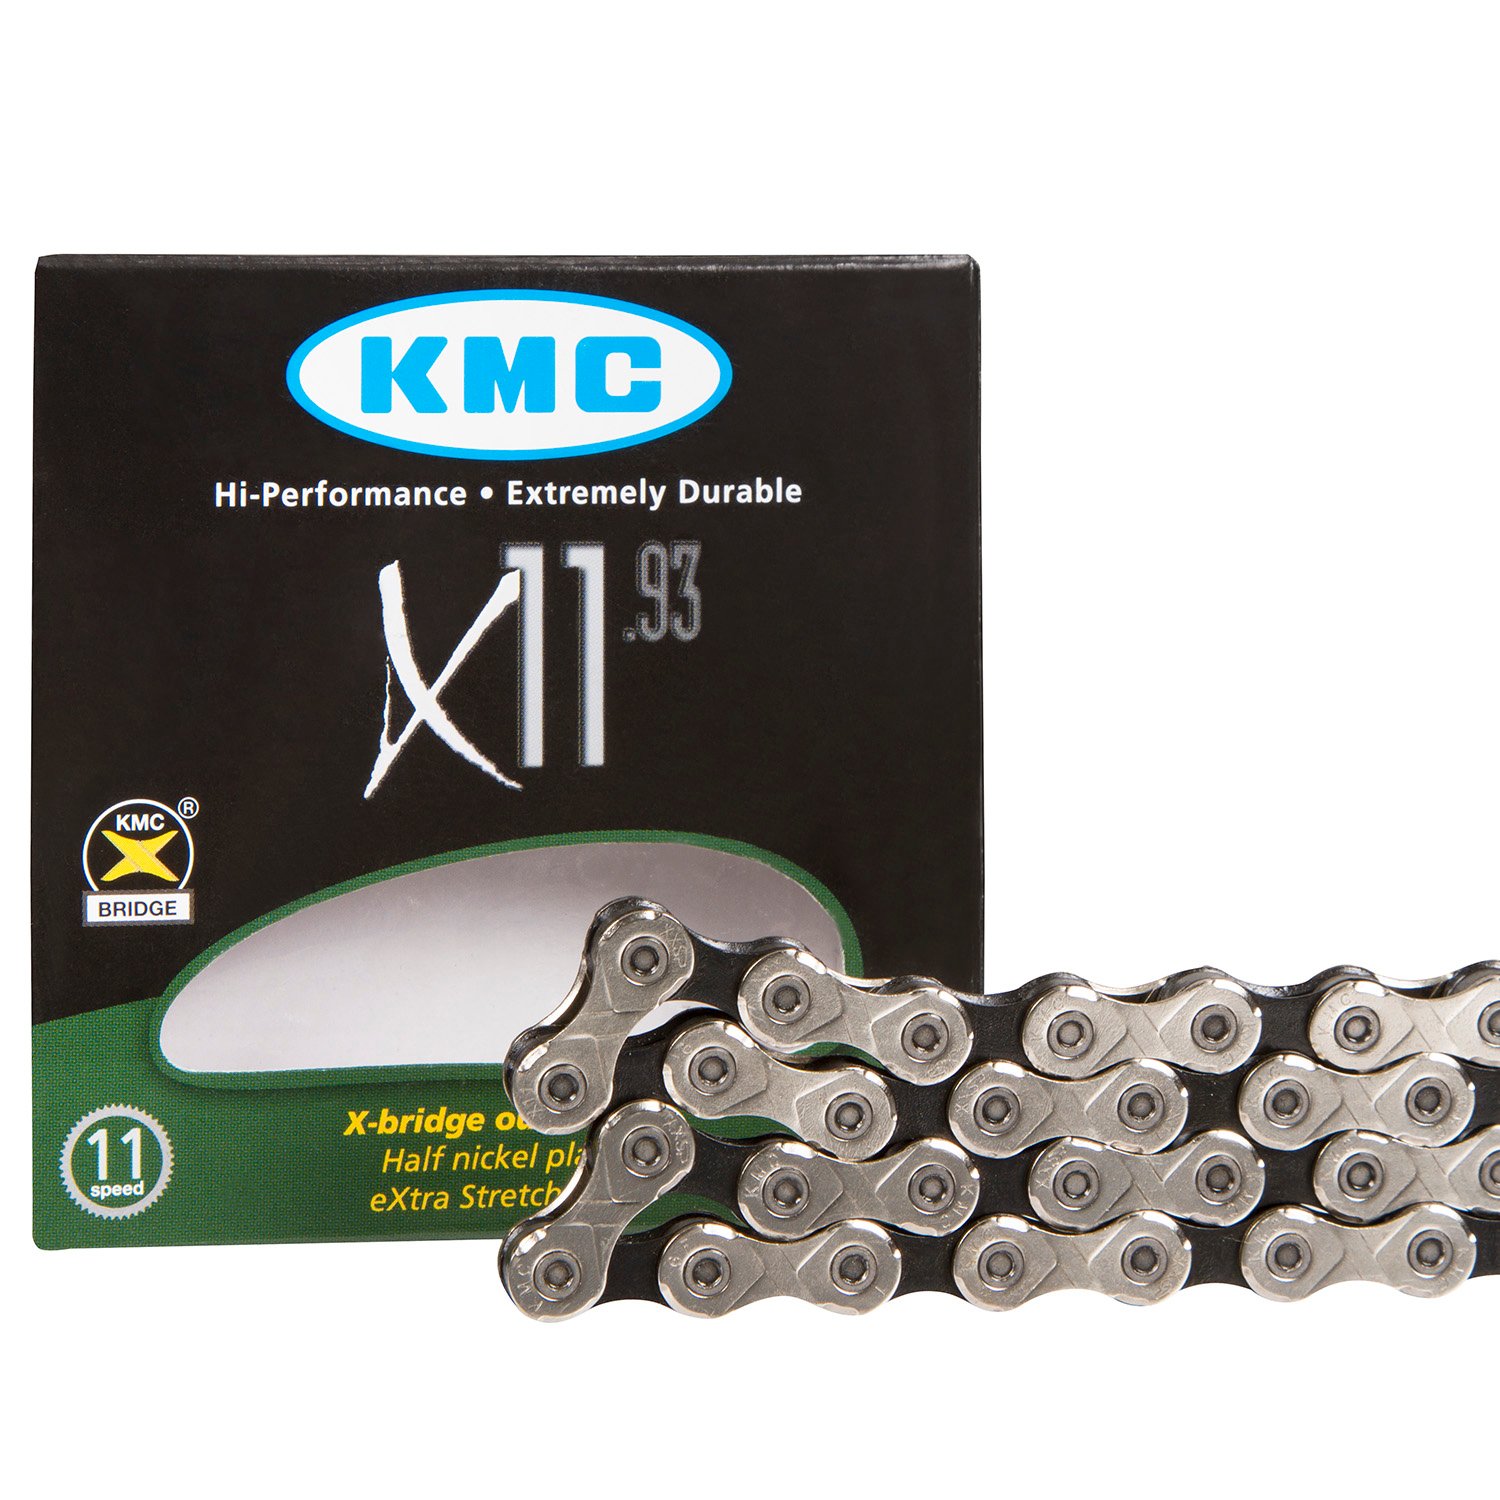 KMC MTB-Kette X-11.93 11-fach, 118 Glieder